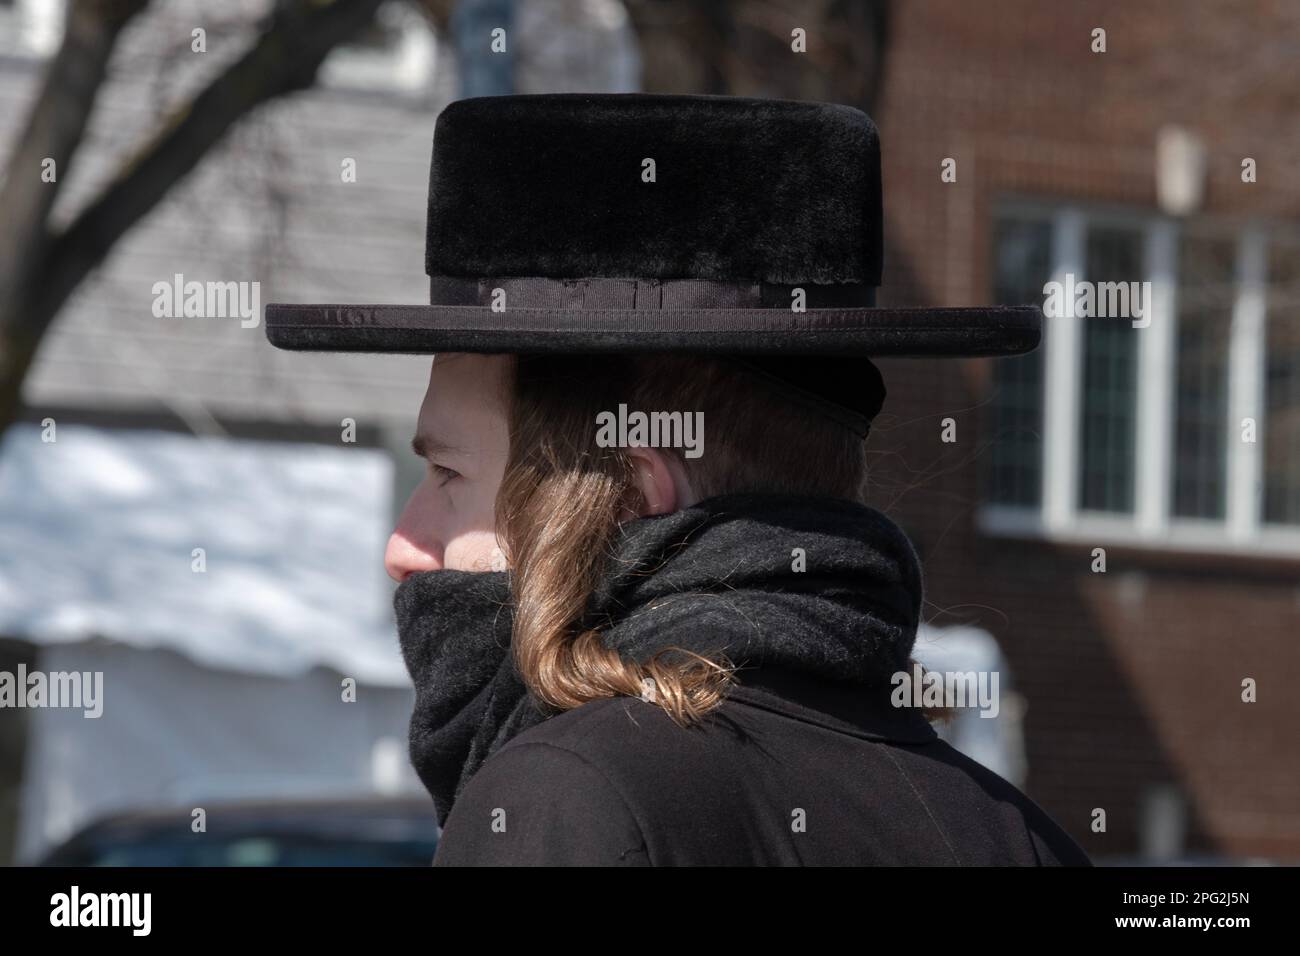 Un ebraico hassidico ortodosso con un lungo peyot riccio, un cappello nero e una sciarpa che gli copriva la bocca. A Brooklyn, New York, in una fredda giornata invernale Foto Stock